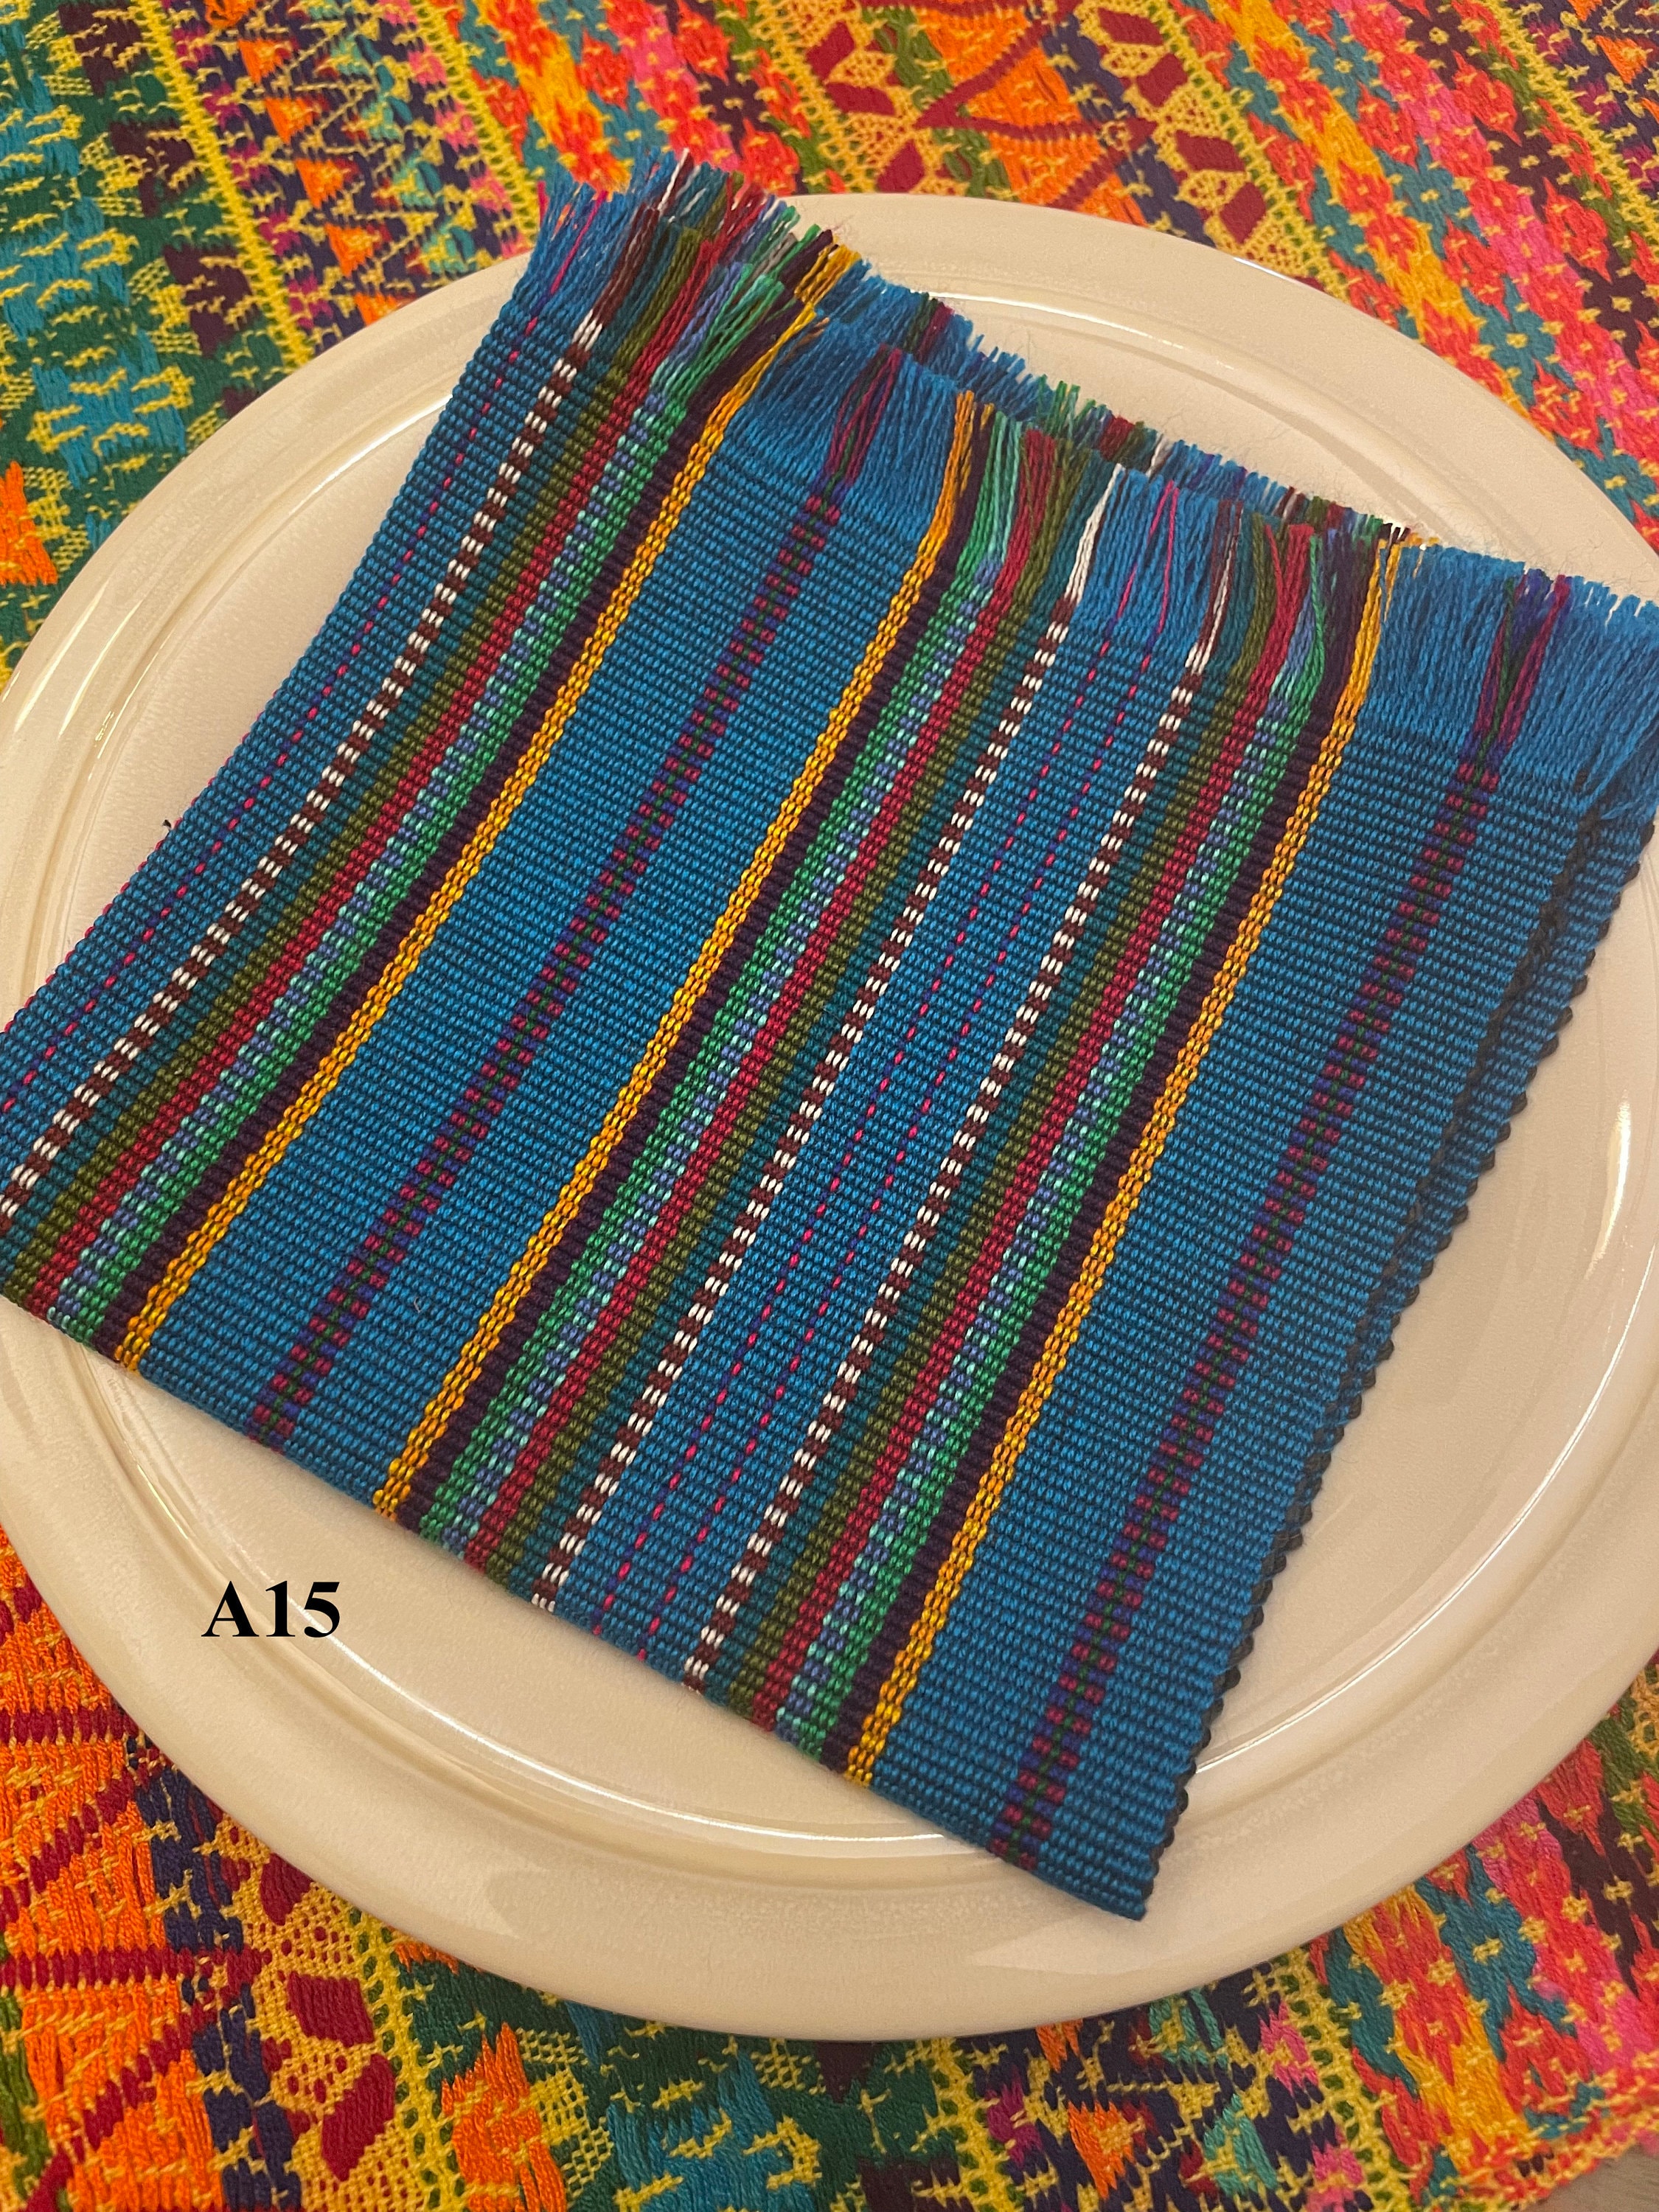 Artisan made 12x12 Guatemalan handwoven napkin placemat textile cloth